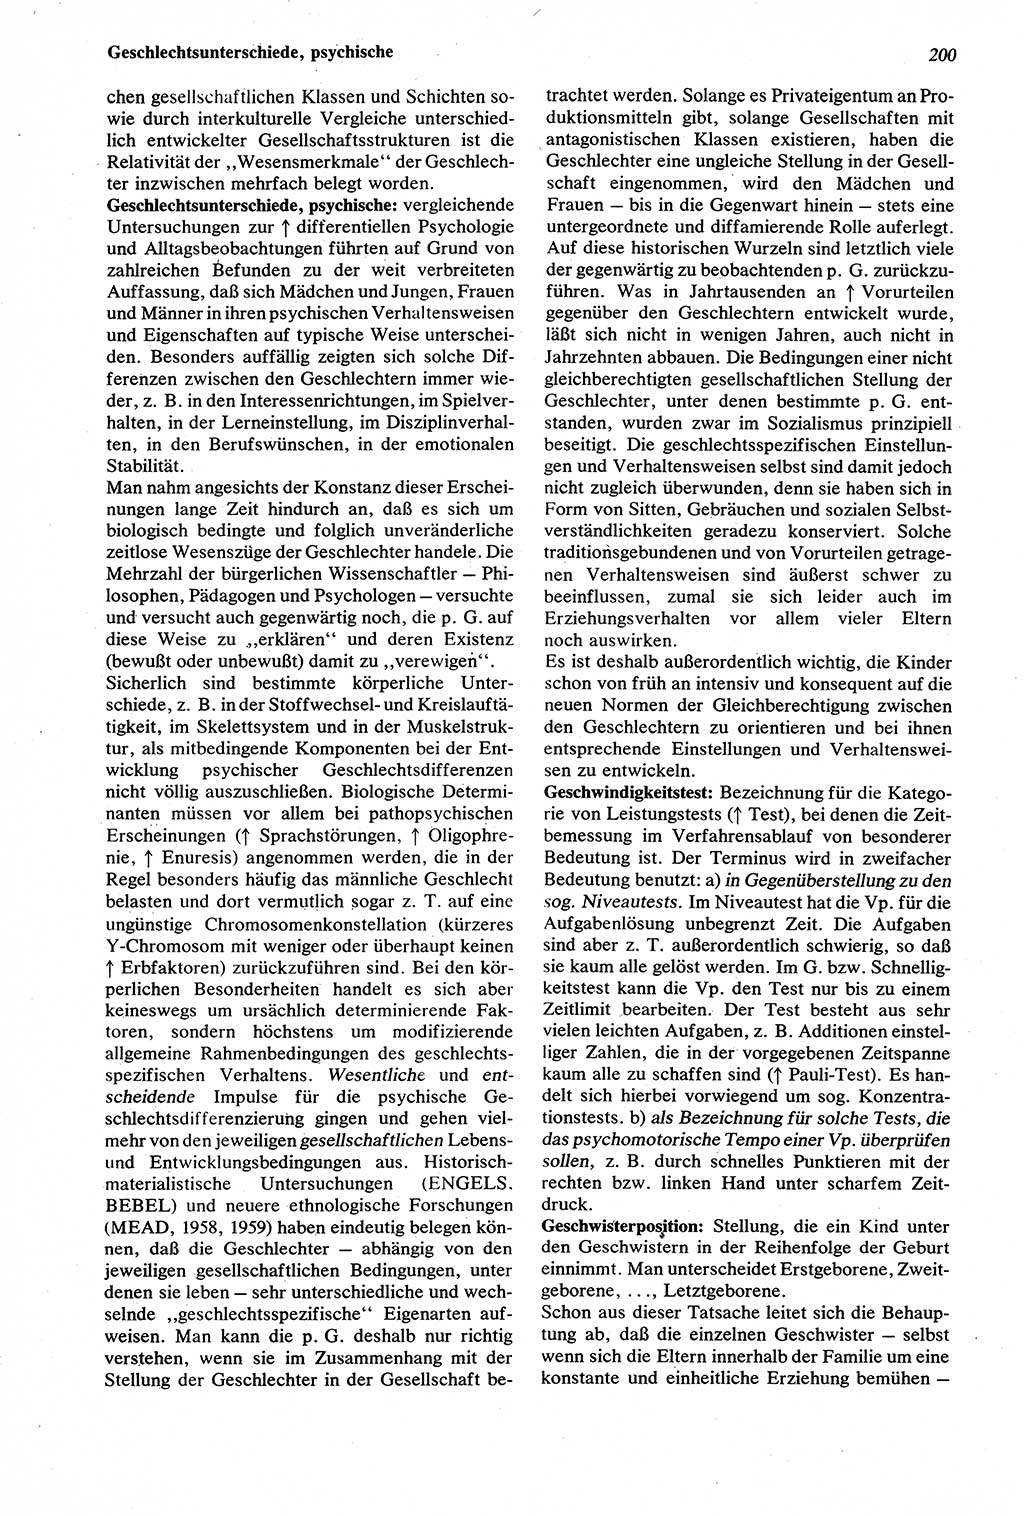 Wörterbuch der Psychologie [Deutsche Demokratische Republik (DDR)] 1976, Seite 200 (Wb. Psych. DDR 1976, S. 200)